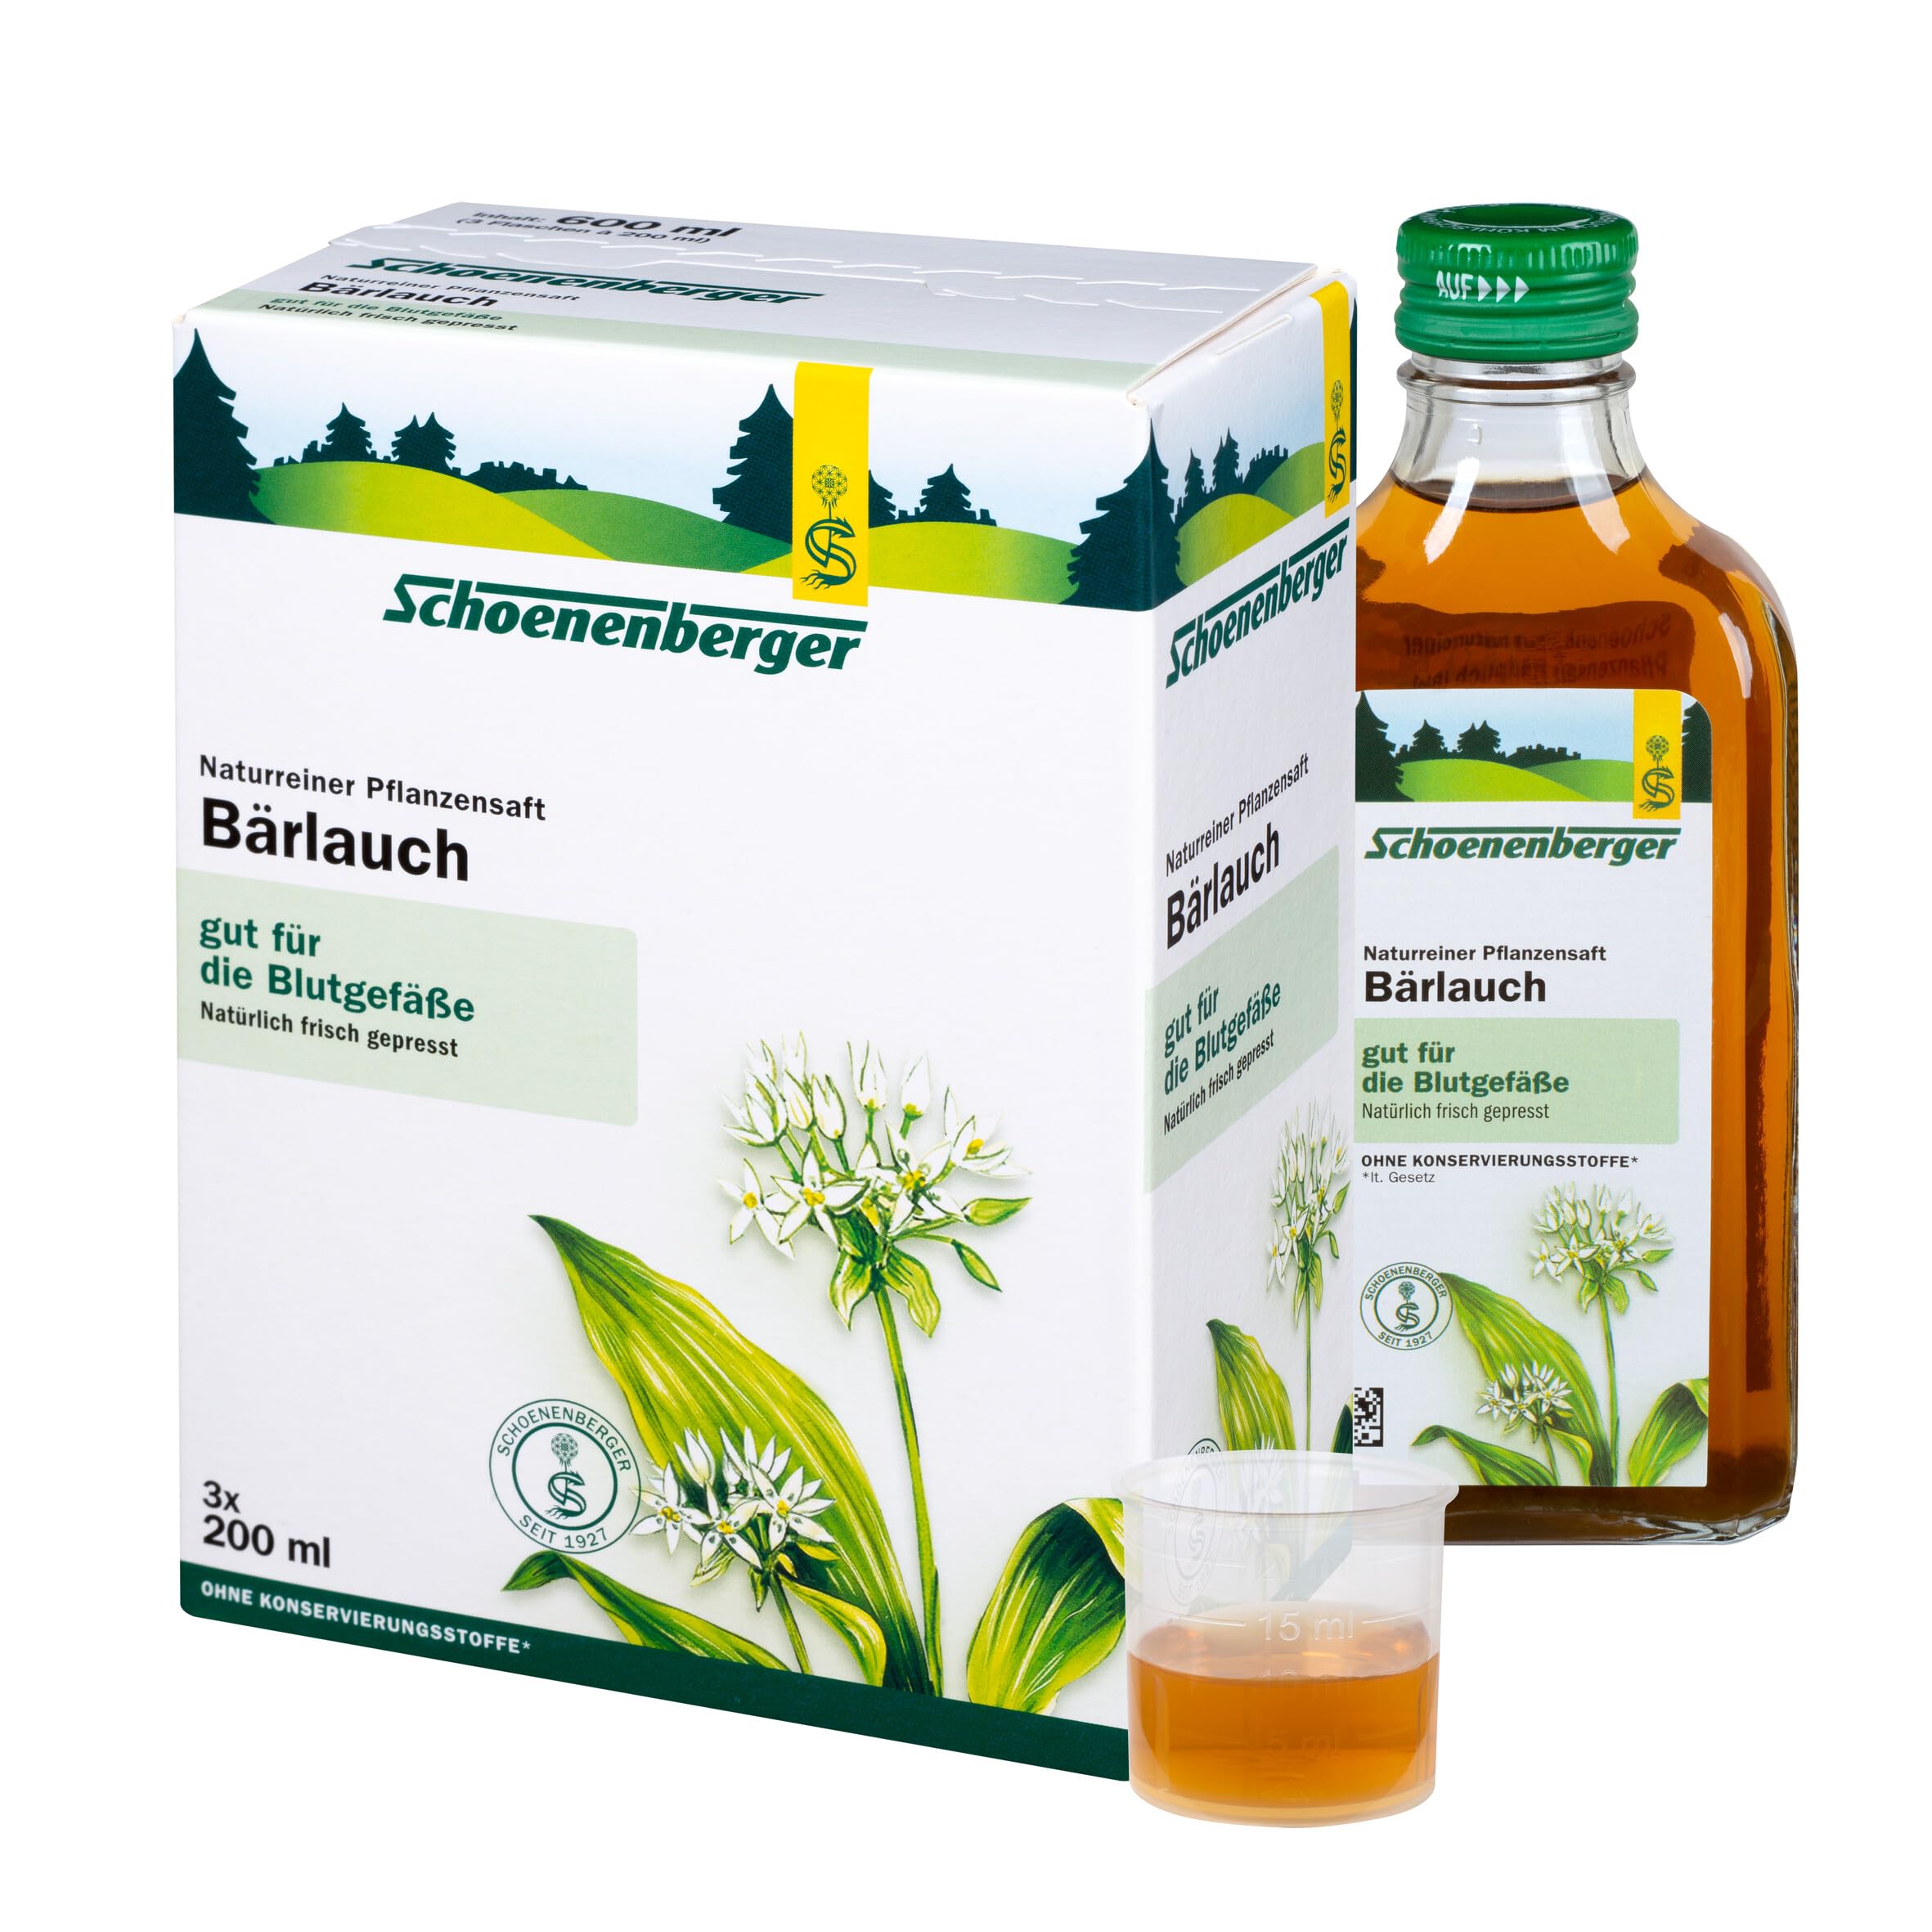 Schoenenberger - Bärlauch naturreiner Pflanzensaft - 3x 200 ml (600 ml) Glasflaschen - gut für die Blutgefäße - natürlich frisch gepresst - bio